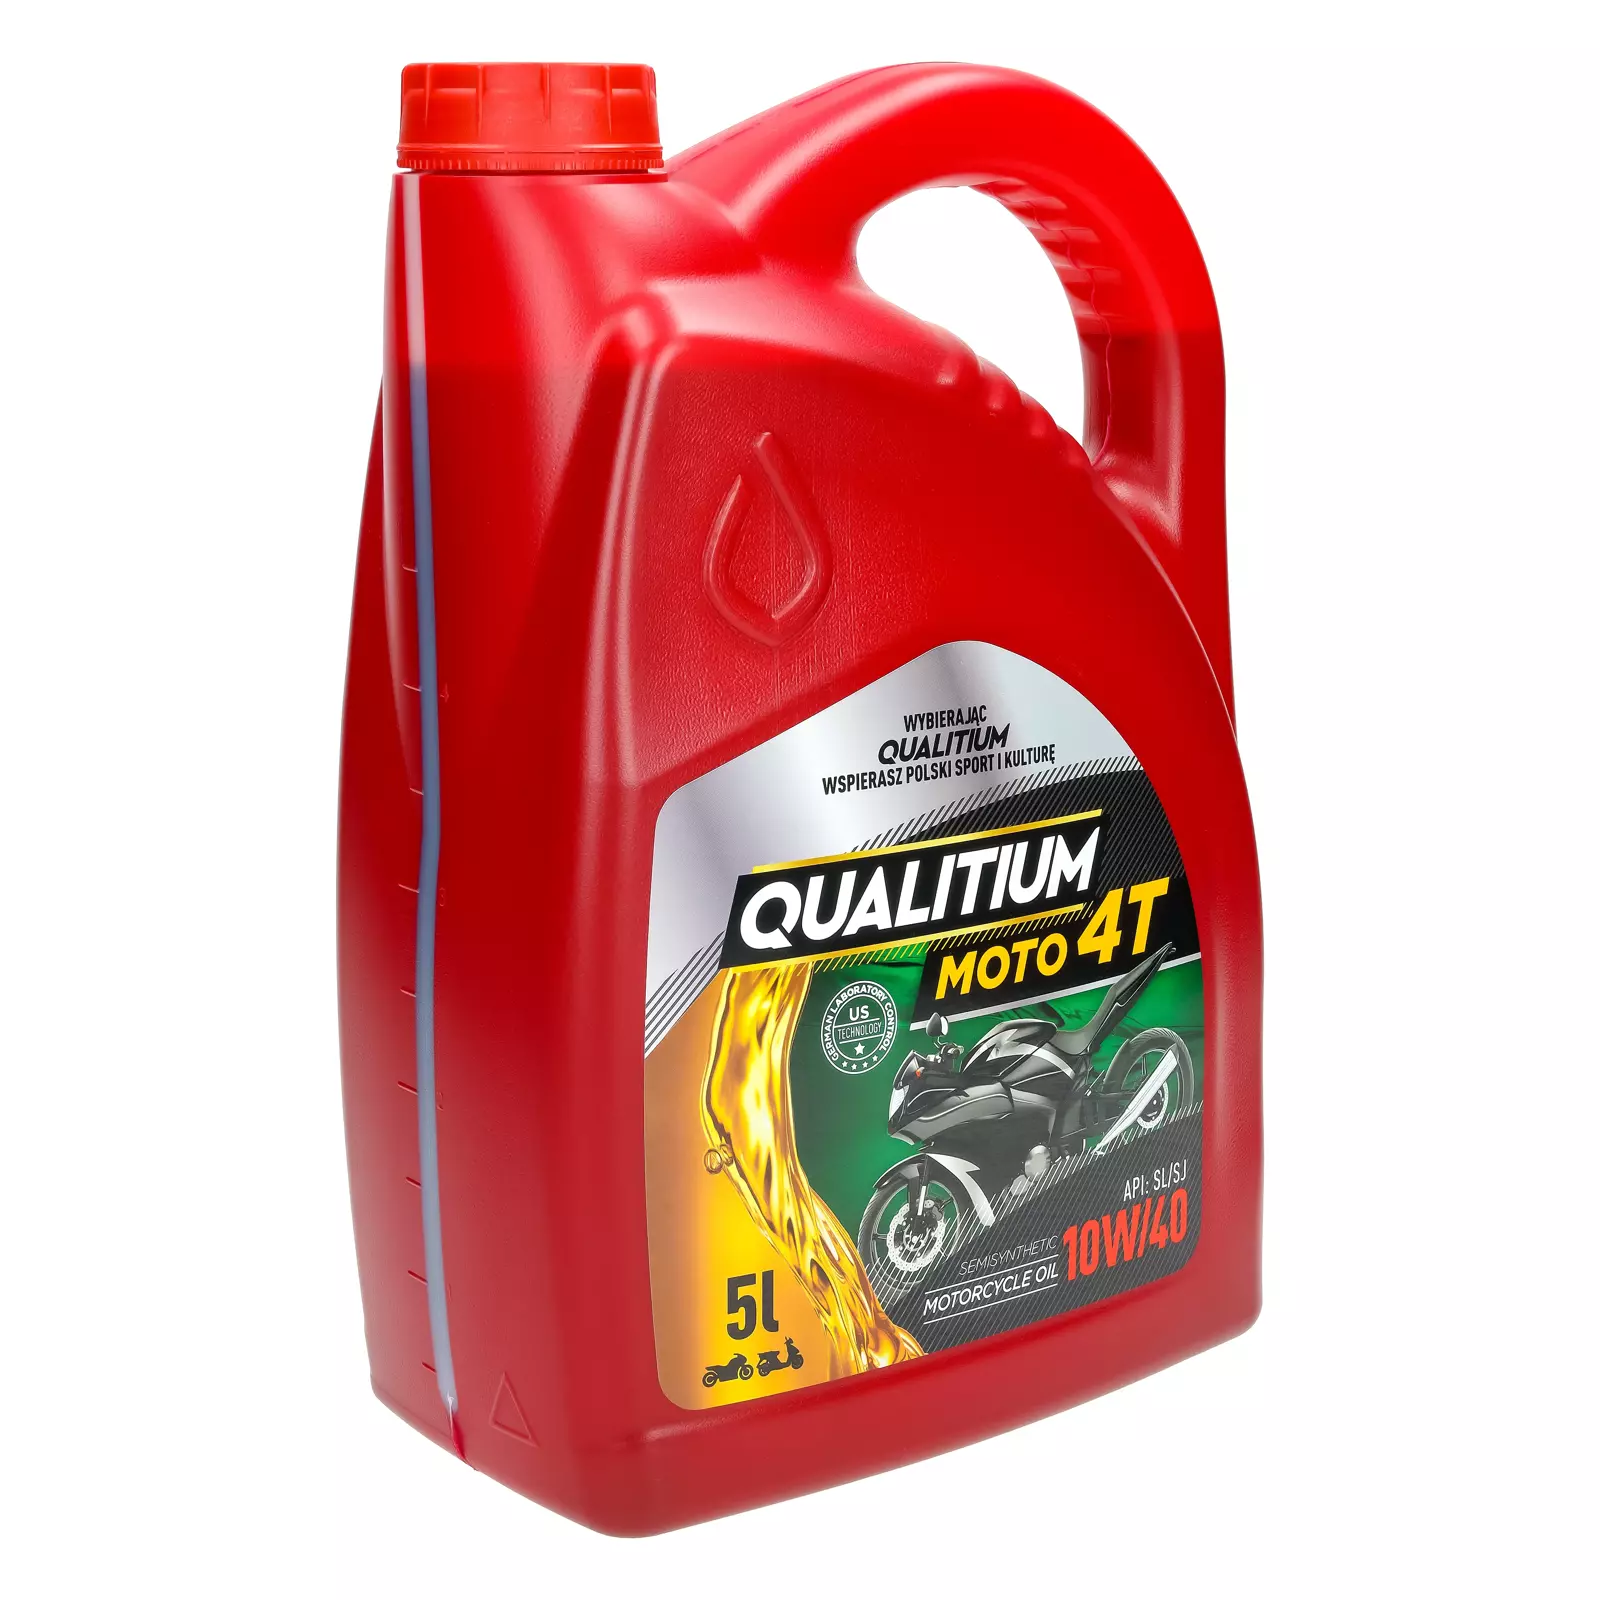 Моторное масло Qualitium Moto 4T 10W-40 5л., QM4T-5